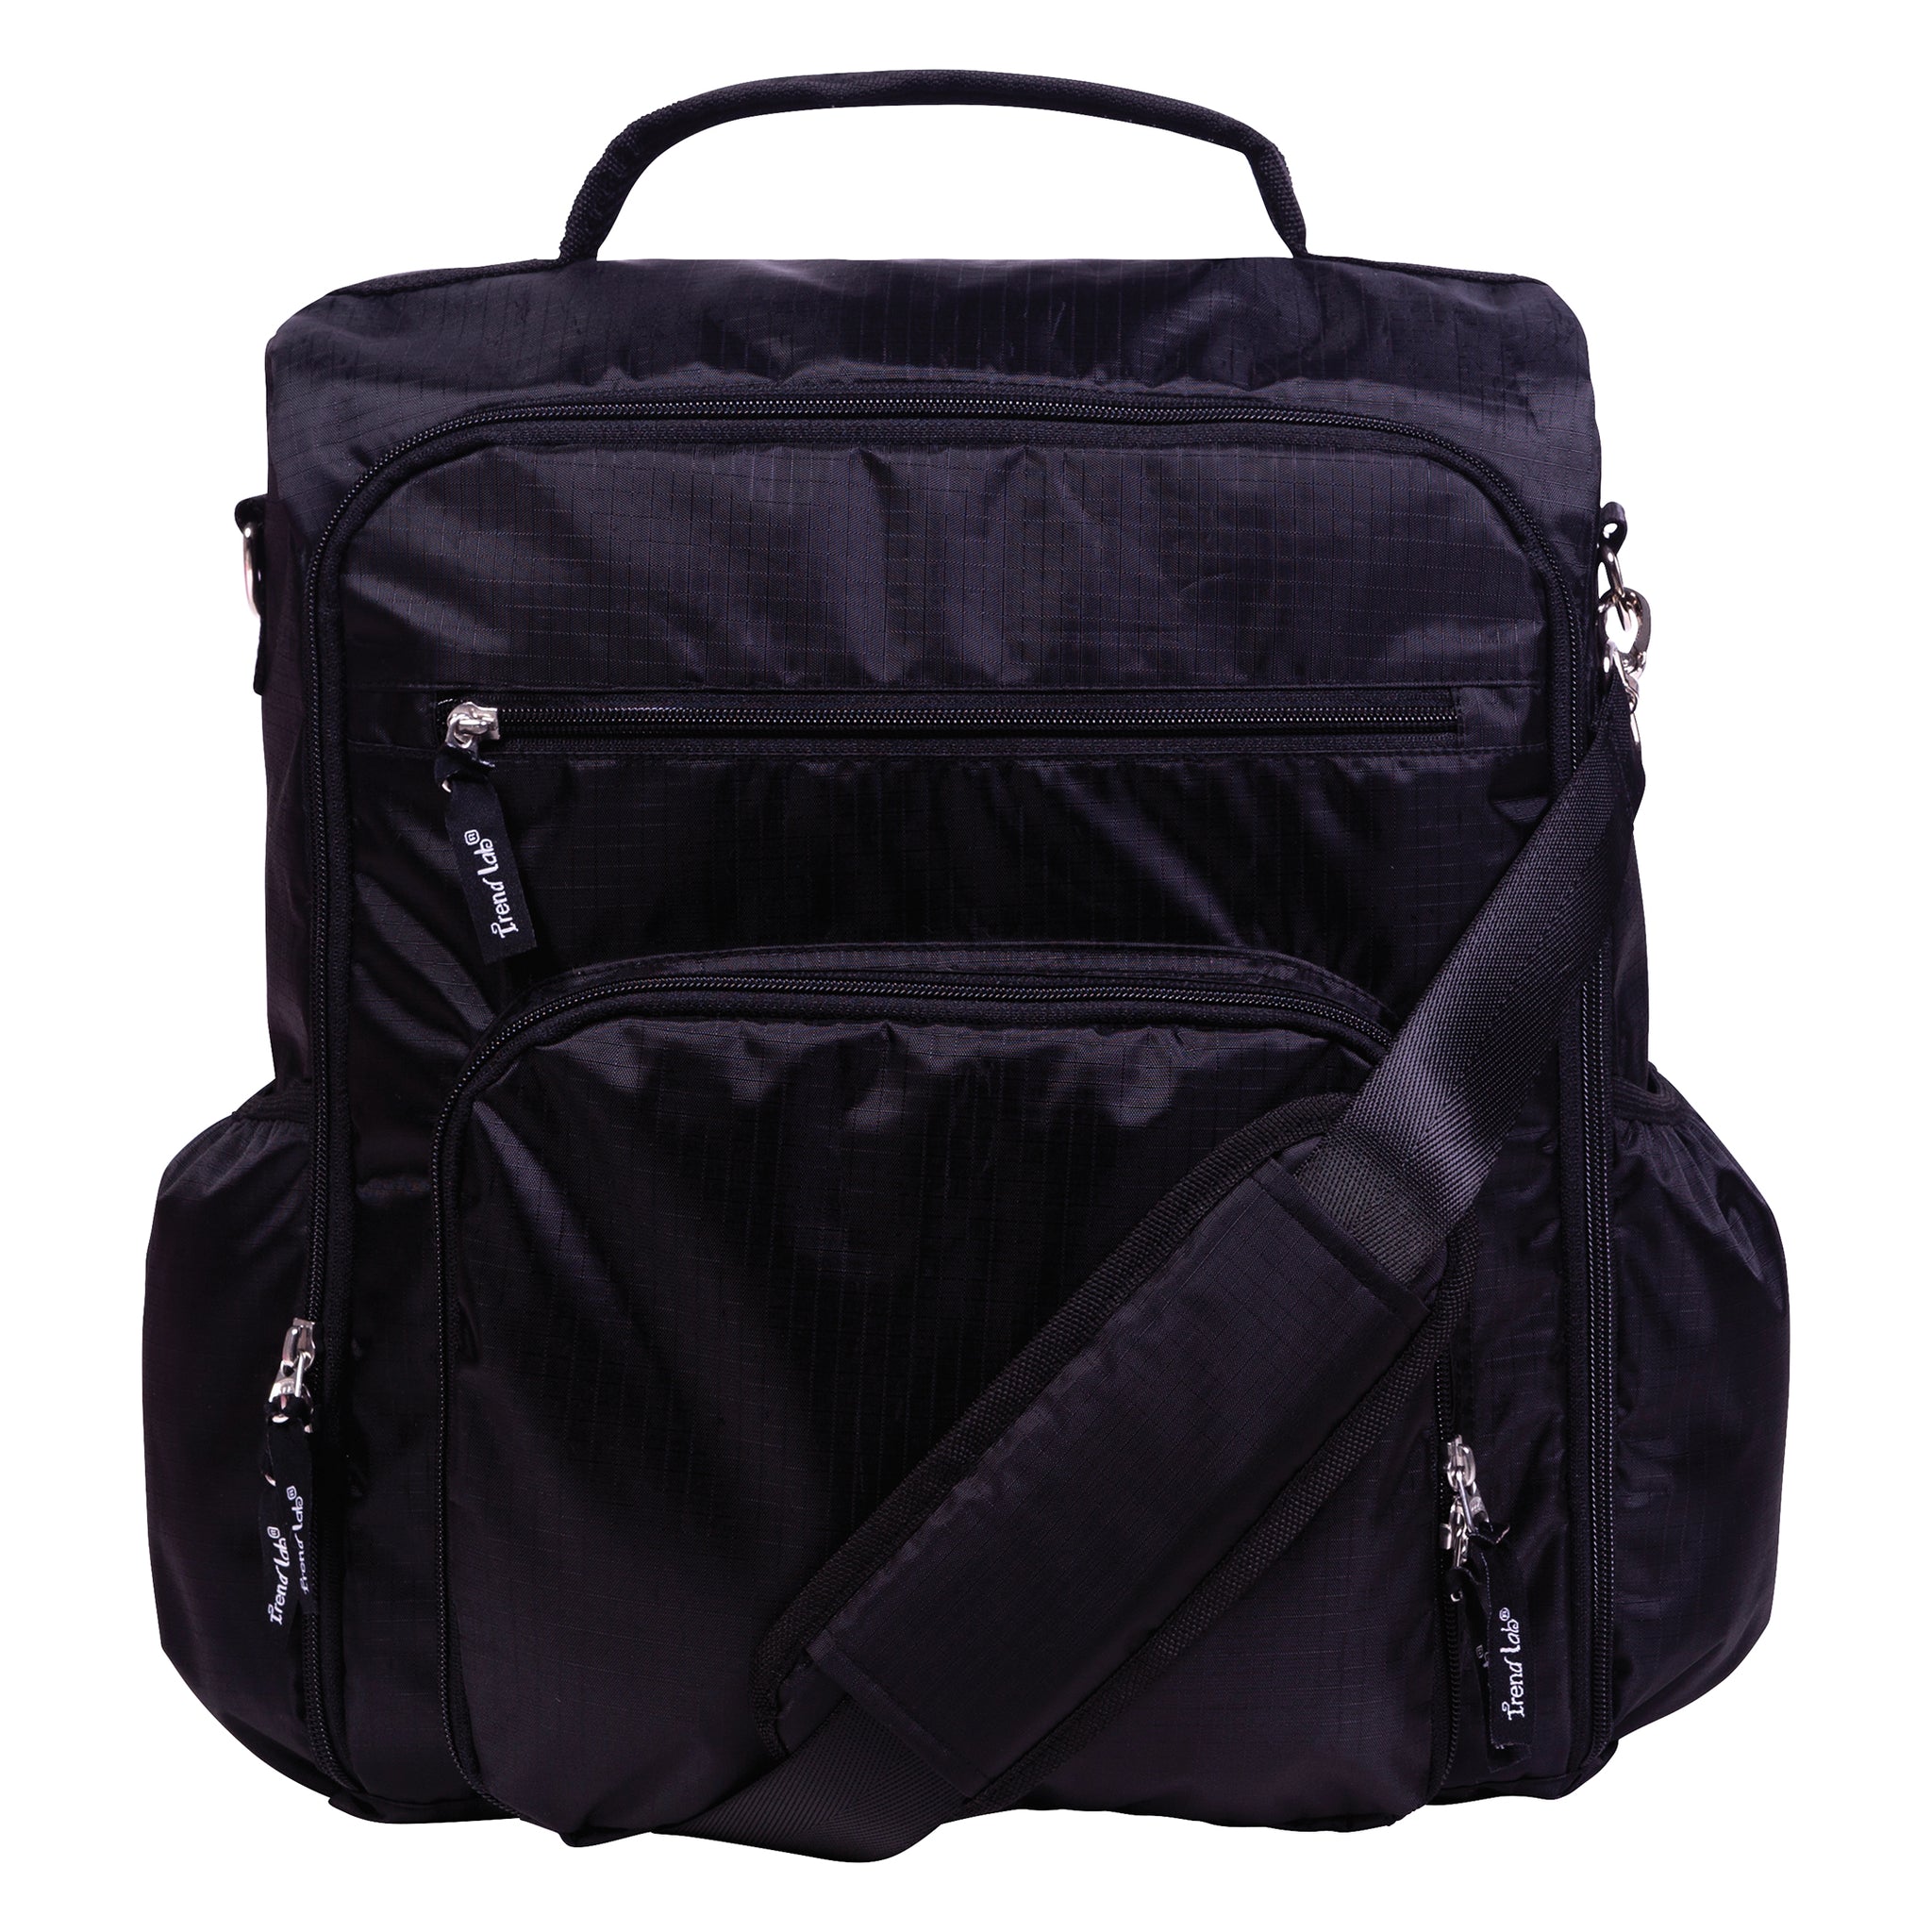 Black Convertible Diaper Bag  Diaper Bag Backpack, Easily